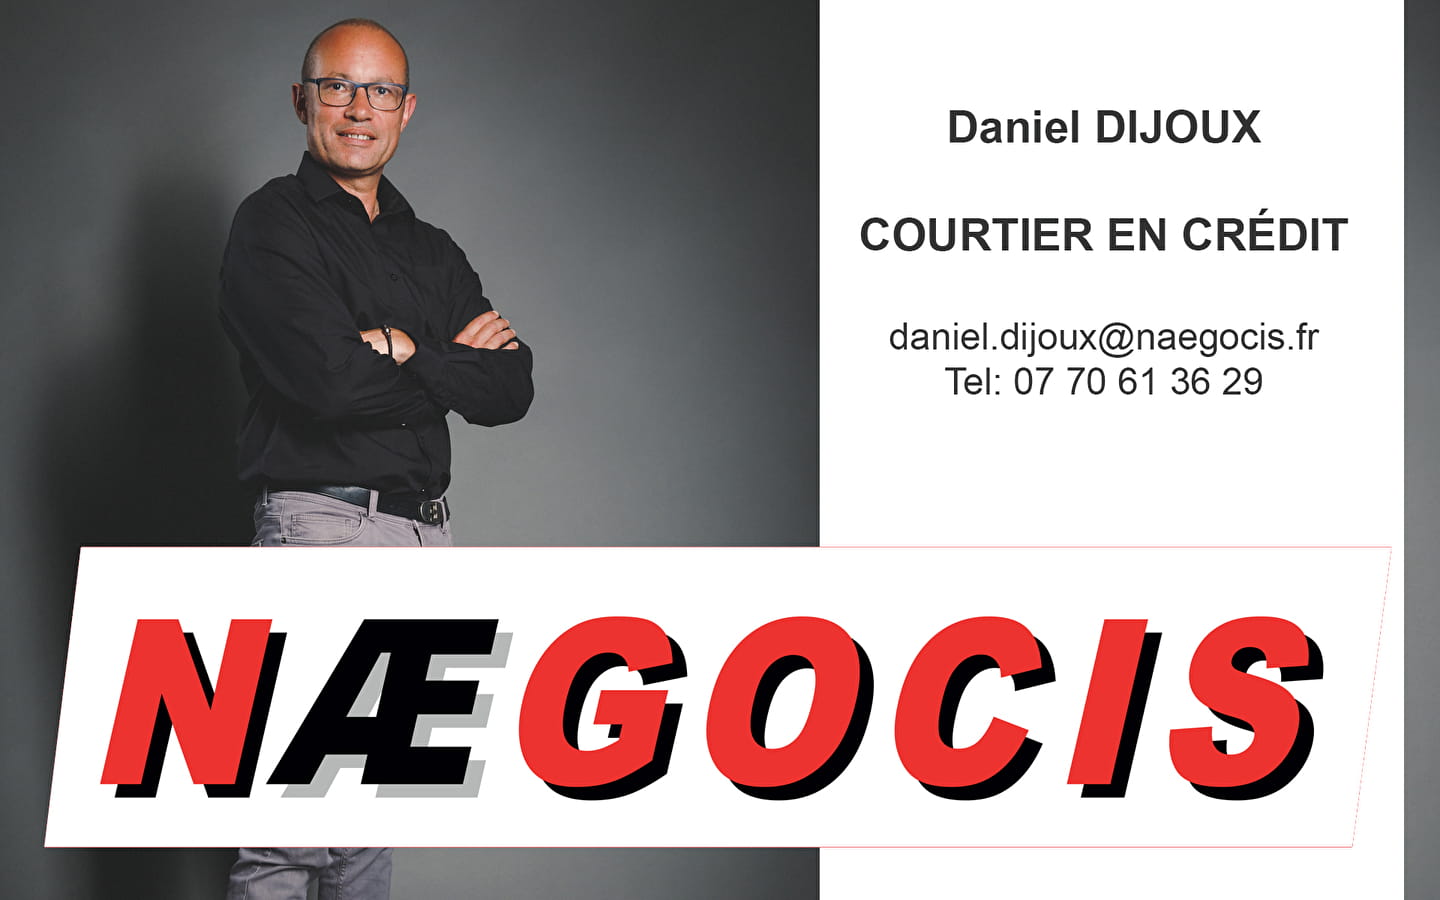 Daniel Dijoux Courtier (Naegocis)